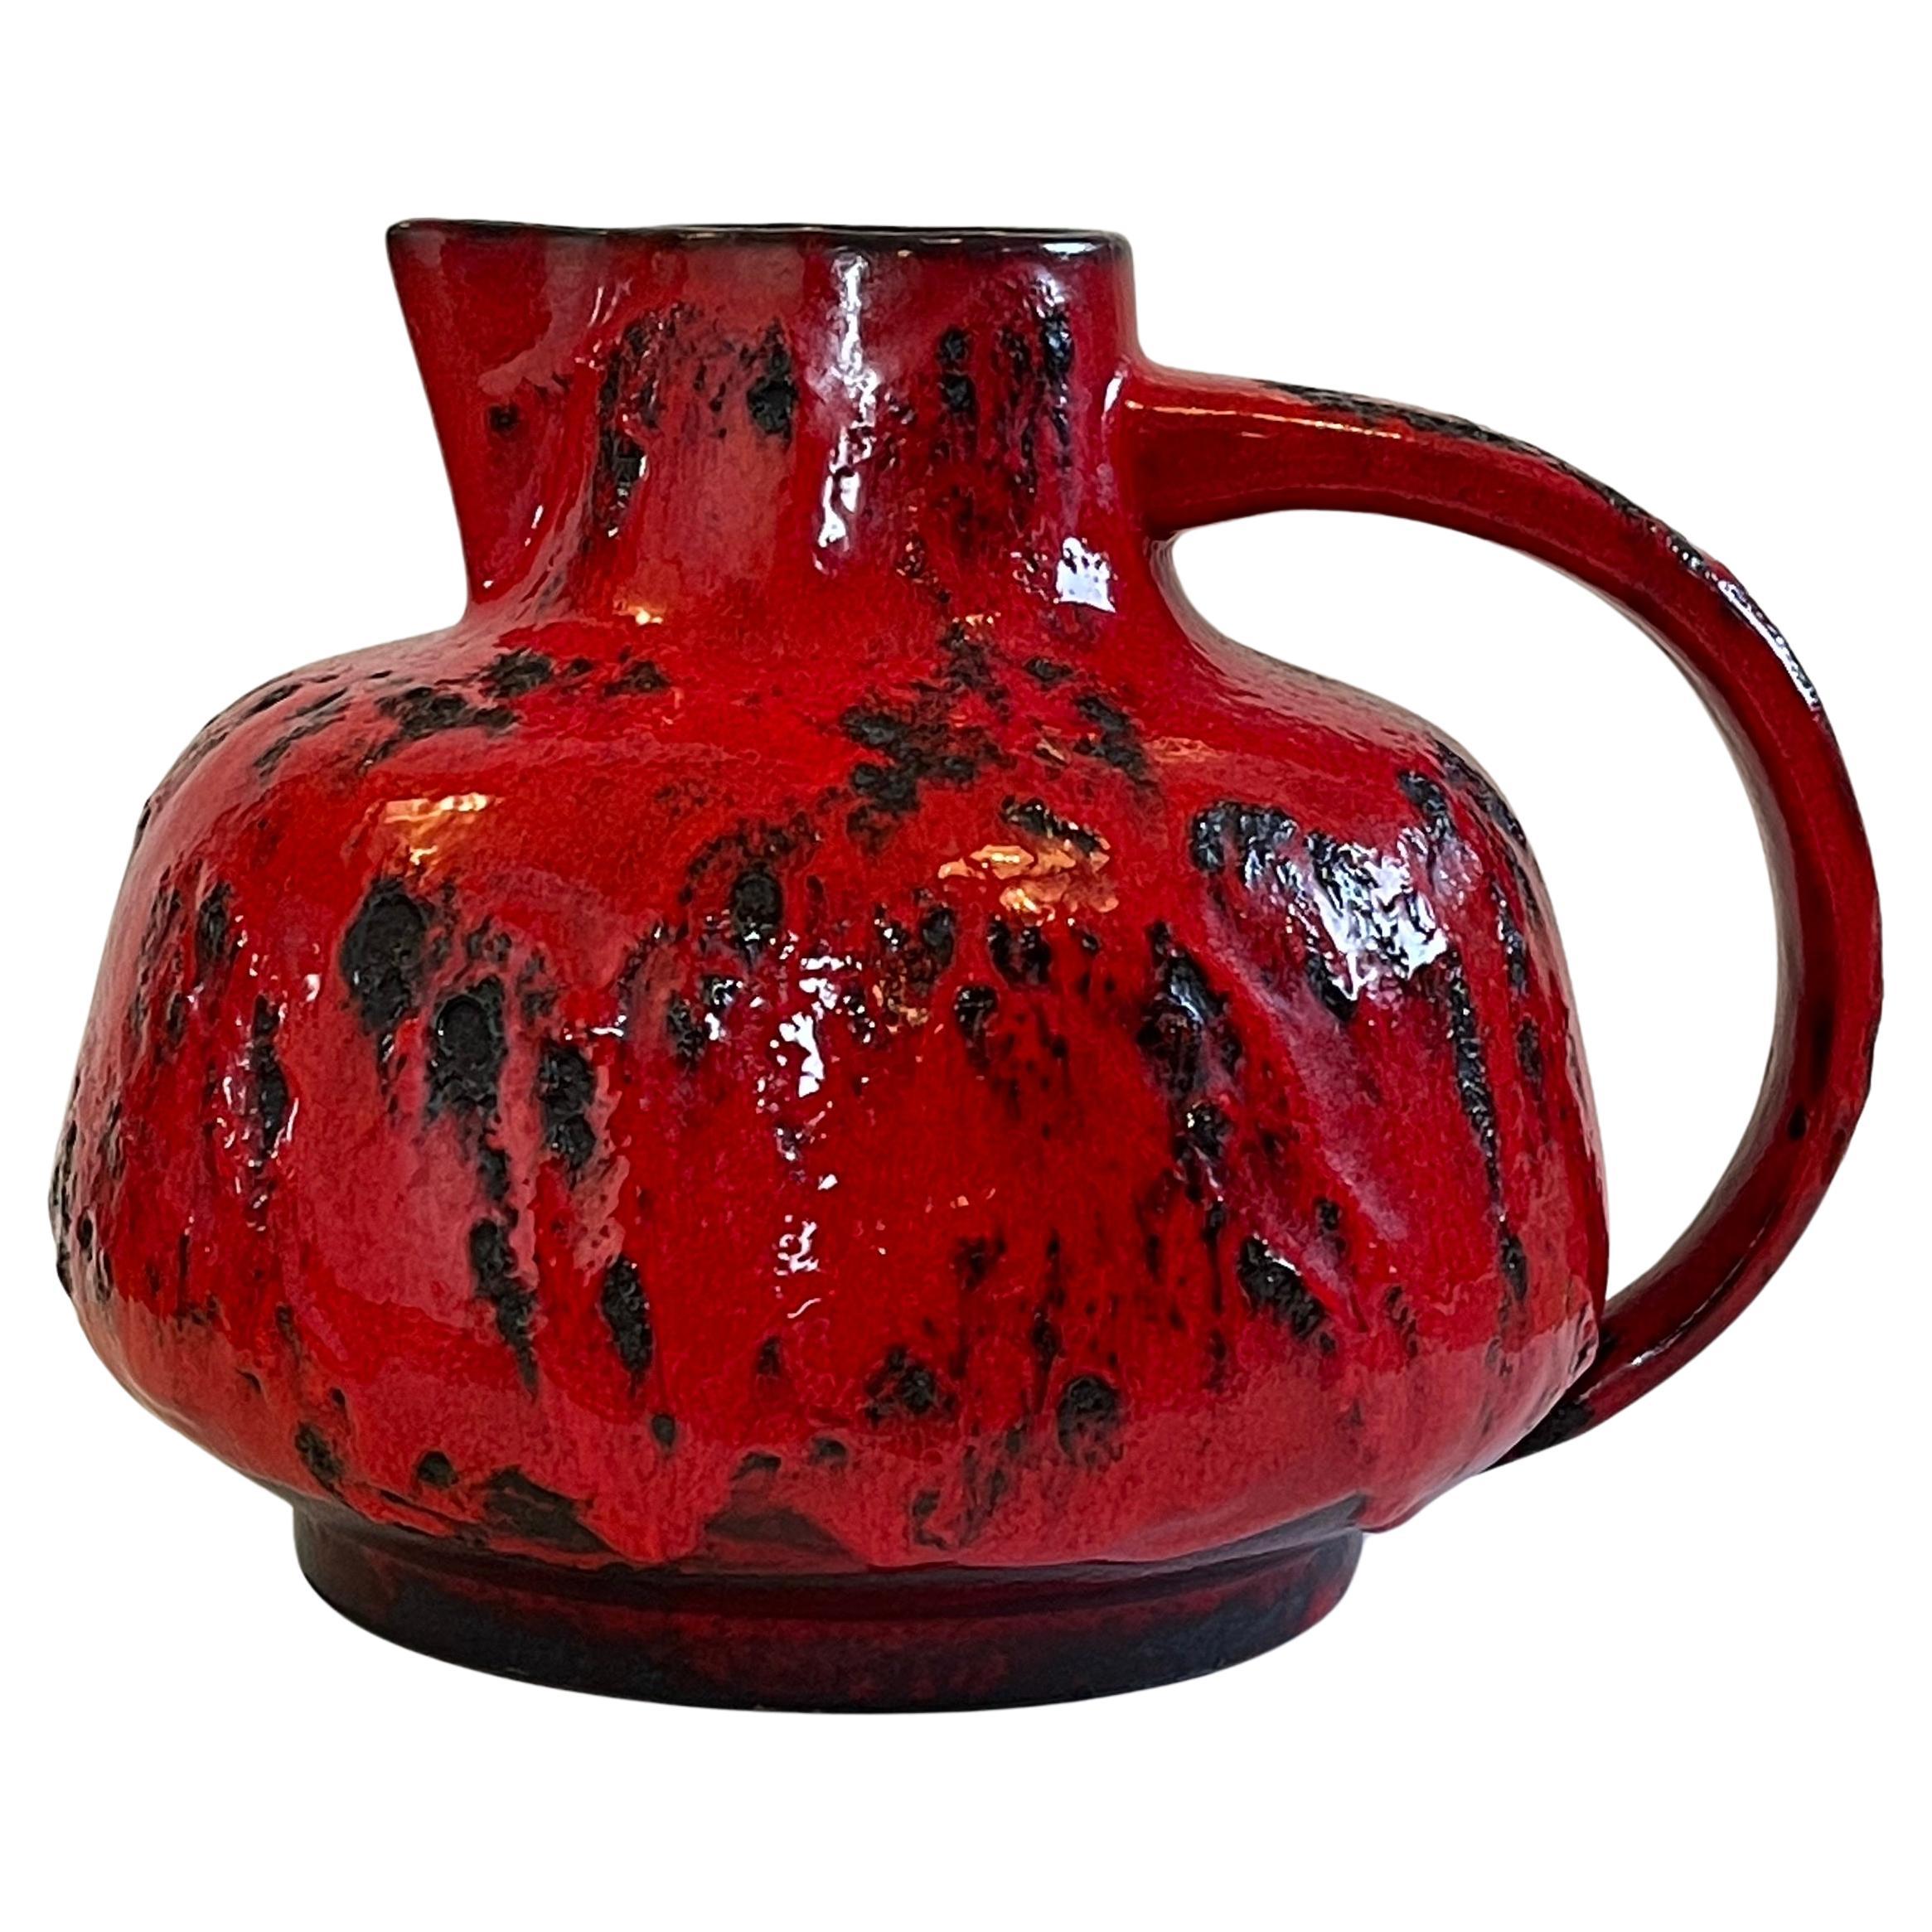 Vase ou pichet expressif et très grand en céramique allemande moderne du milieu du siècle, fait à la main, d'un rouge impressionnant et ardent.
La céramique ''Fat Lava'' à son meilleur par l'artiste du Studio Ursula Beyrau pour Graeflich Ortenburg,